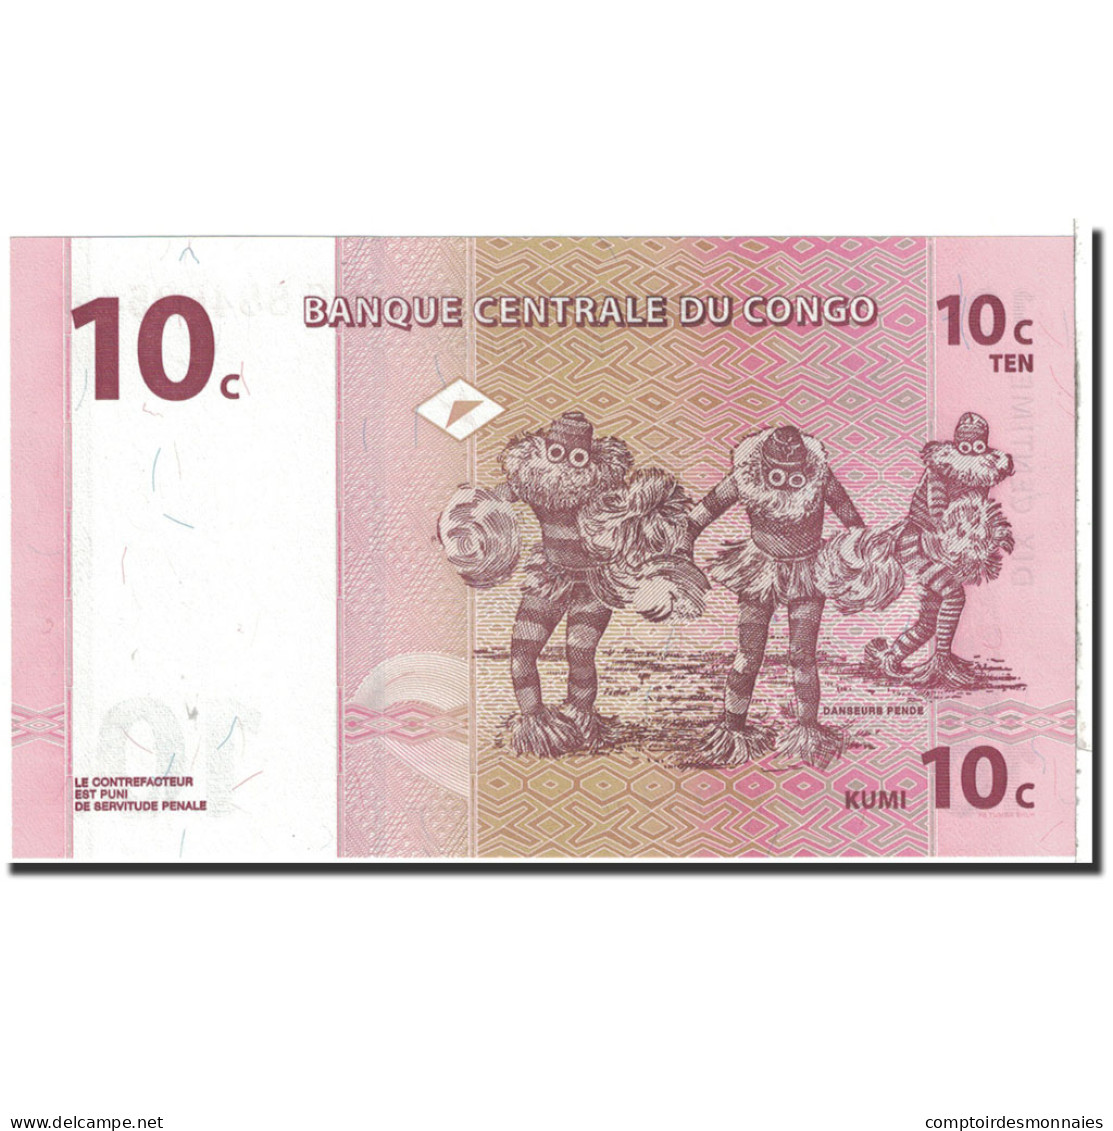 Billet, Congo Democratic Republic, 10 Centimes, 1997, 1997-11-01, KM:82a, NEUF - République Démocratique Du Congo & Zaïre